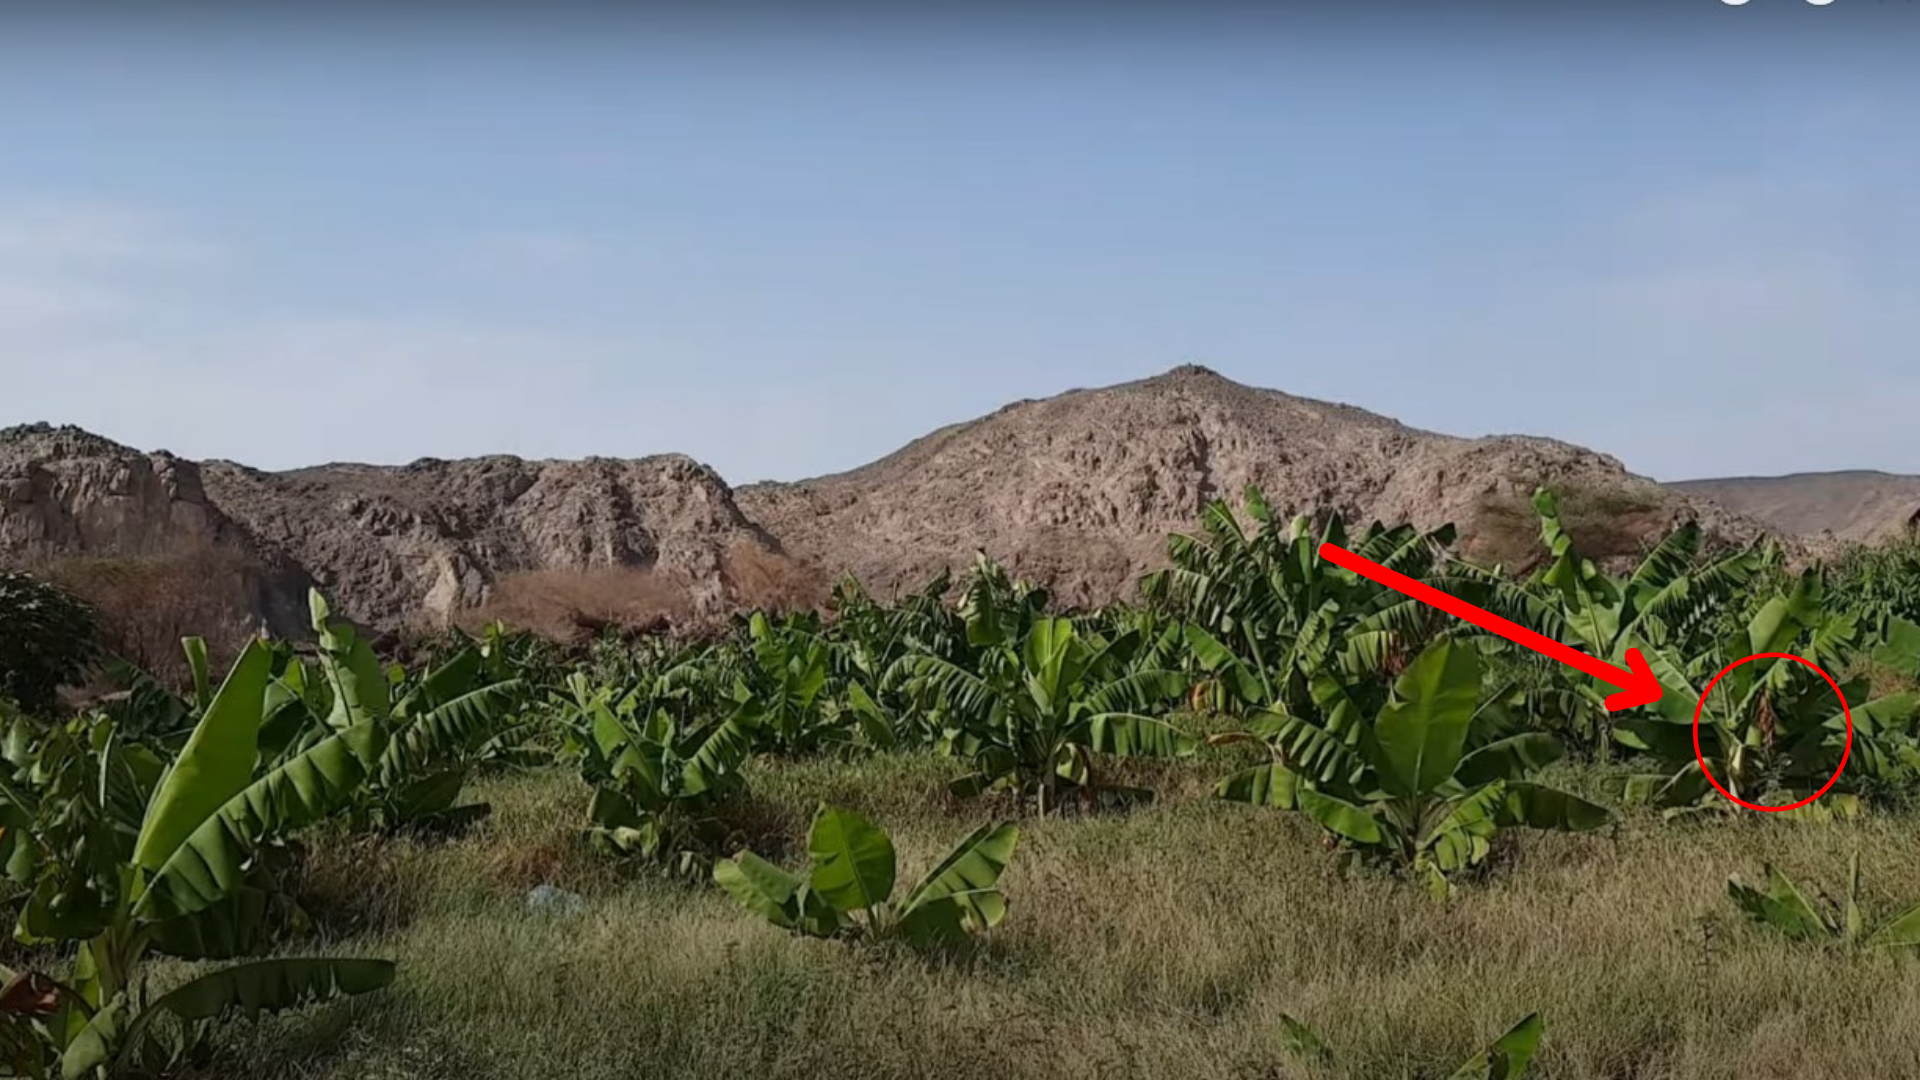 Berhasil Tertangkap Kamera Adanya Kebun Pisang di Dataran Padang Pasir Gunung Bebatuan Arab Saudi, kok Ada Ya?